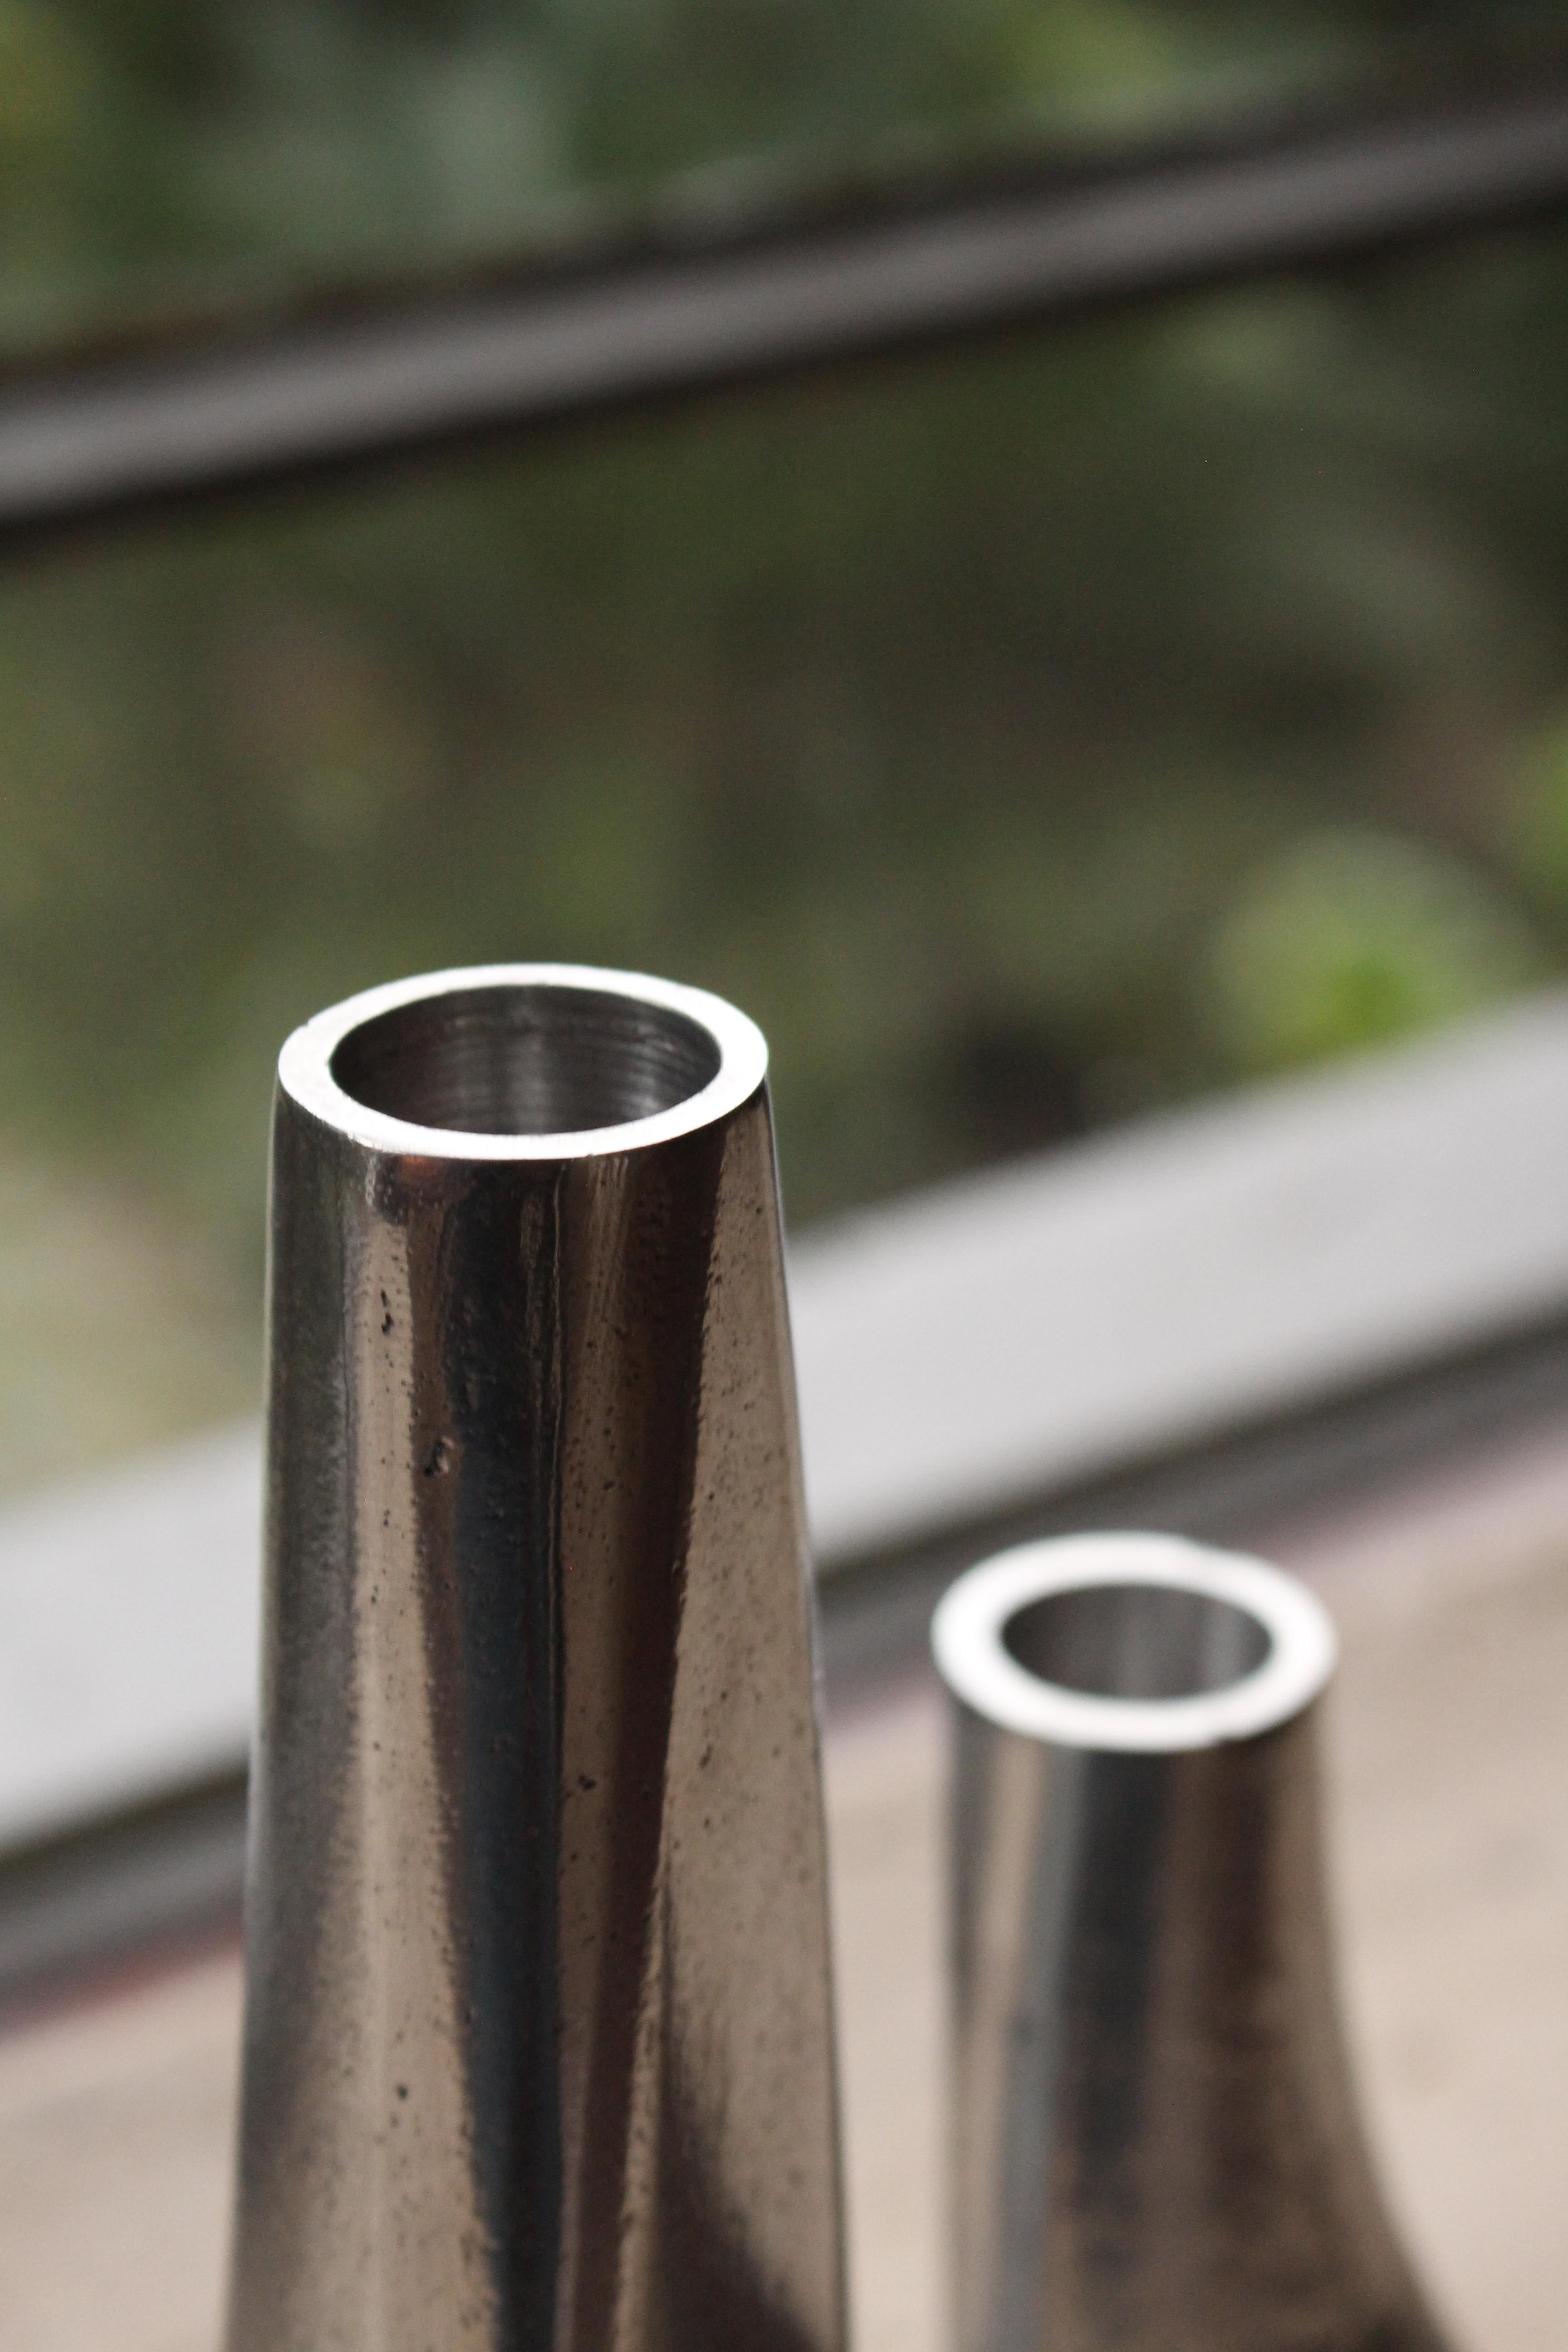 Âncora, entworfen von Christian Haas, ist ein Kerzenständer aus Aluminium-Sandguss. Die Form mit zwei Hohlräumen ermöglicht es, den Kerzenhalter mit einer einfachen Drehung auf zwei Arten zu präsentieren. In einer Position ist die Höhe größer als in